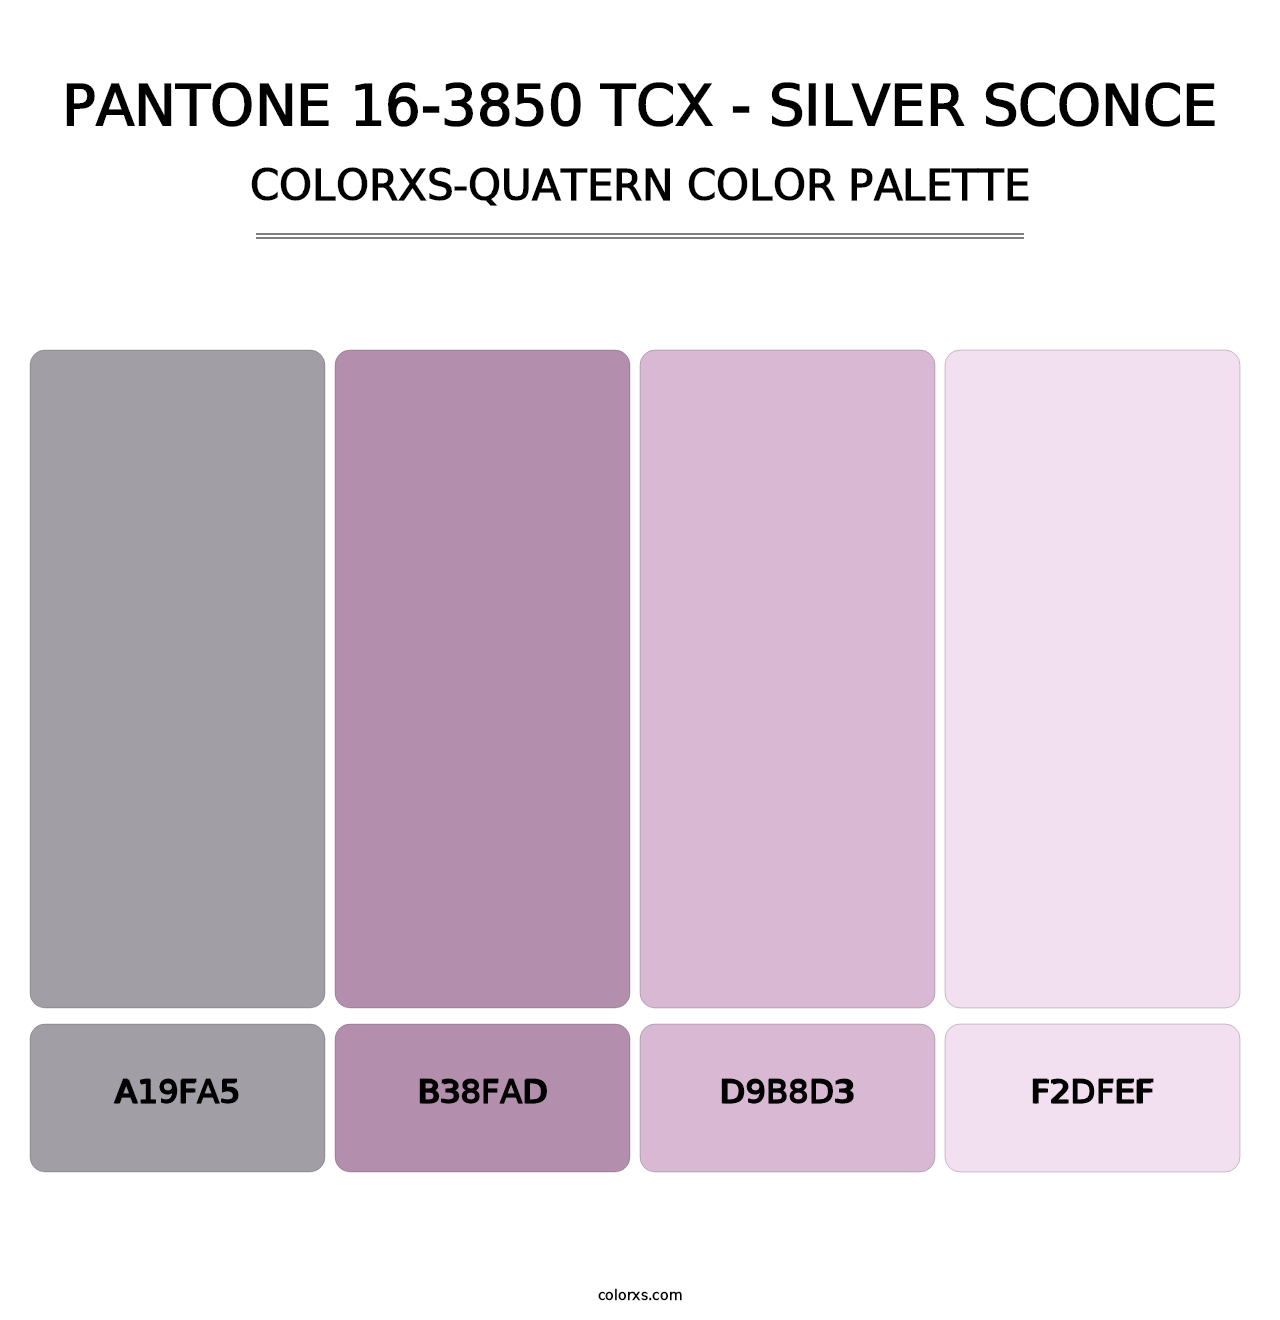 PANTONE 16-3850 TCX - Silver Sconce - Colorxs Quatern Palette